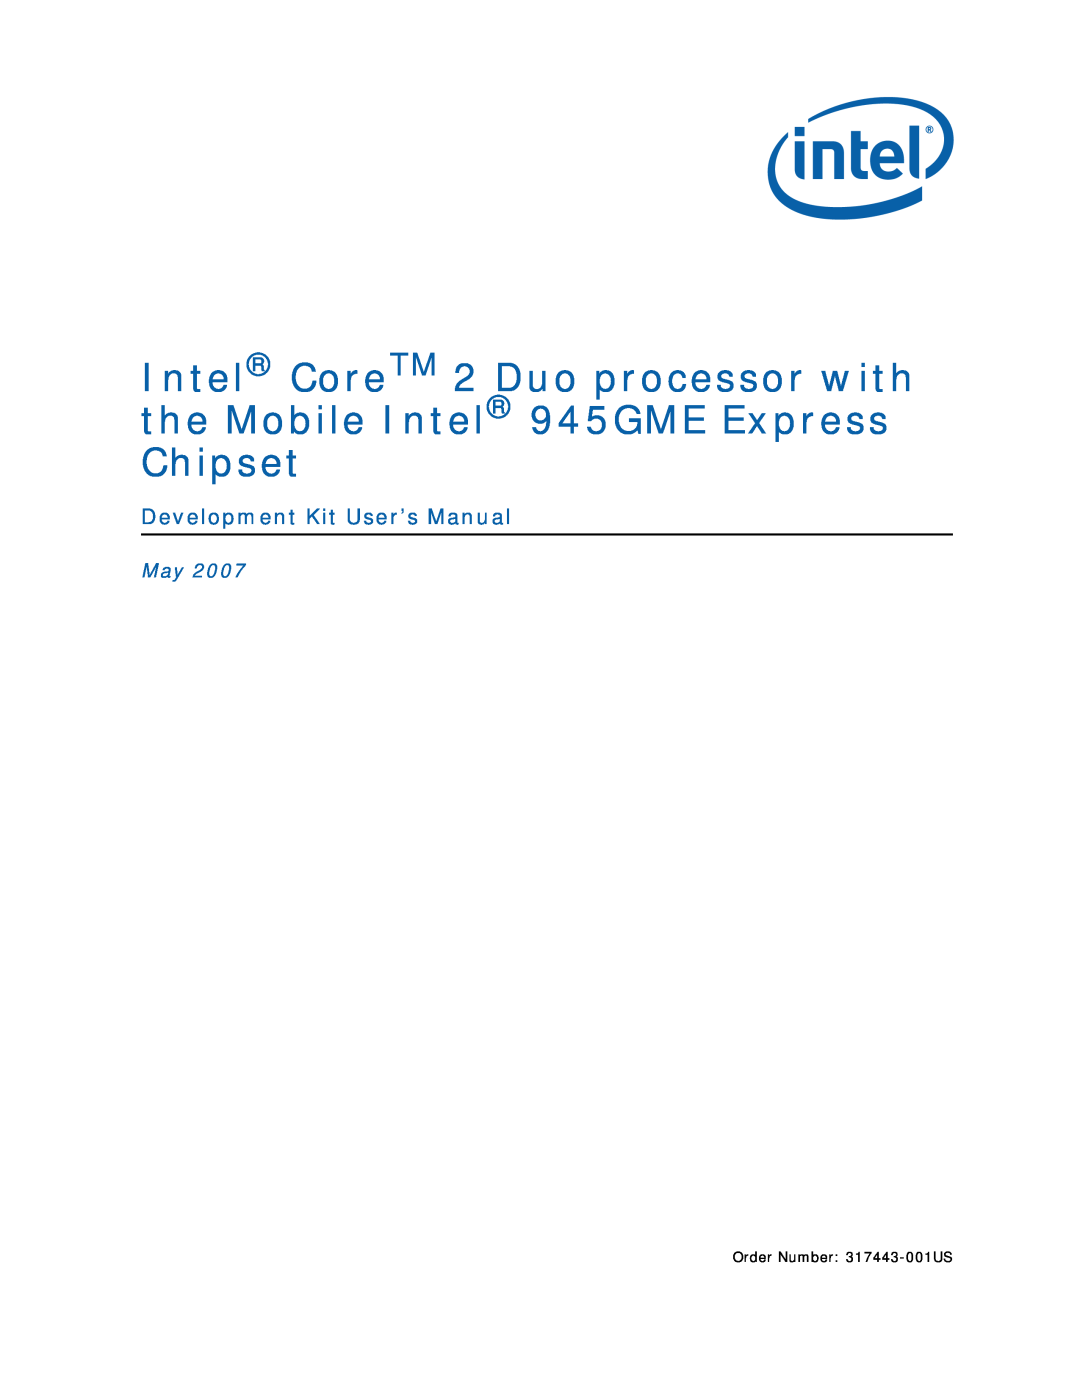 Intel user manual Development Kit User’s Manual, Order Number 317443-001US 